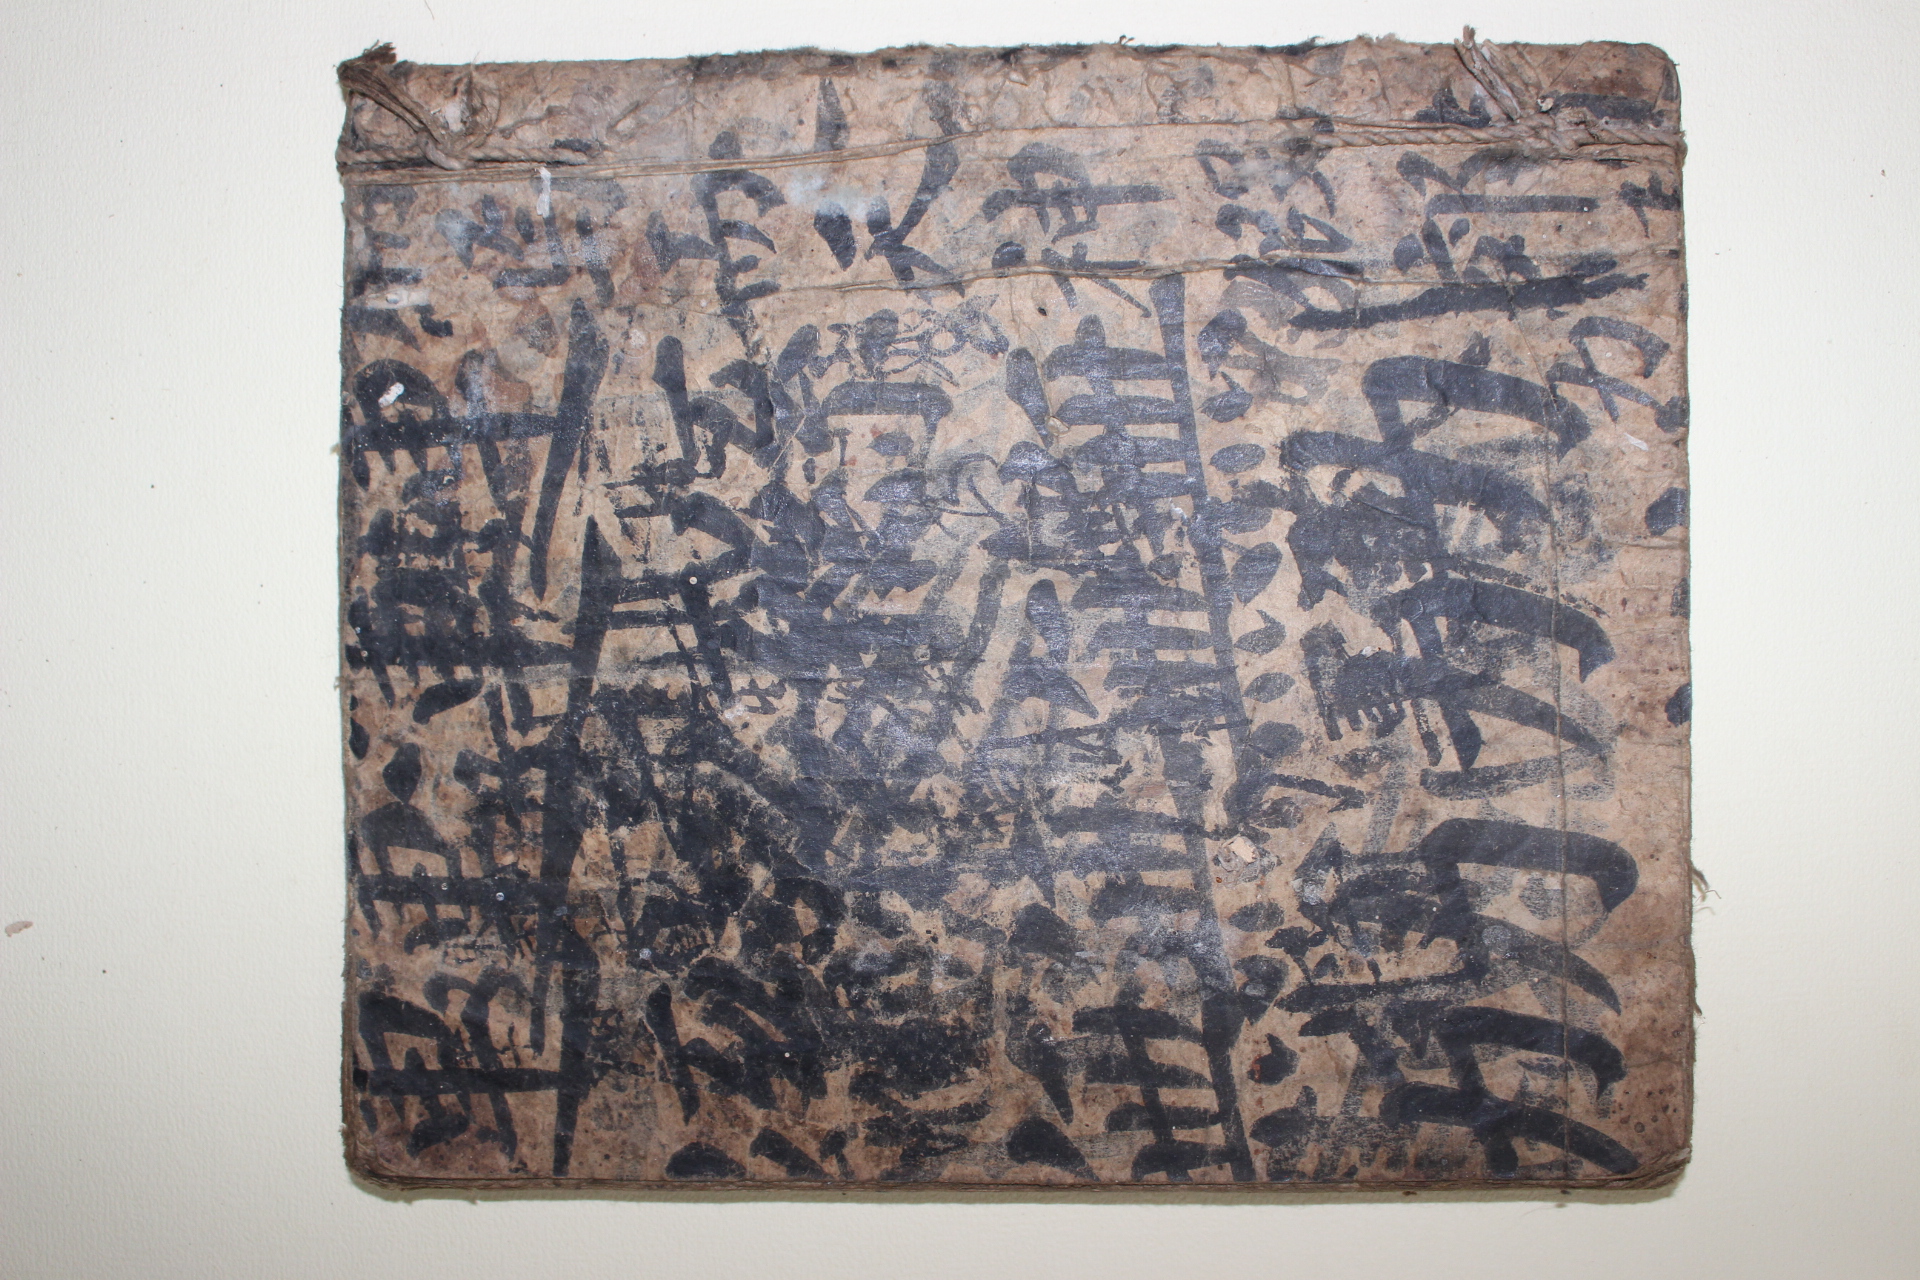 고필사본 조선시대 인물,제도,문물,풍습등을 기록한 견첩록(見睫錄)